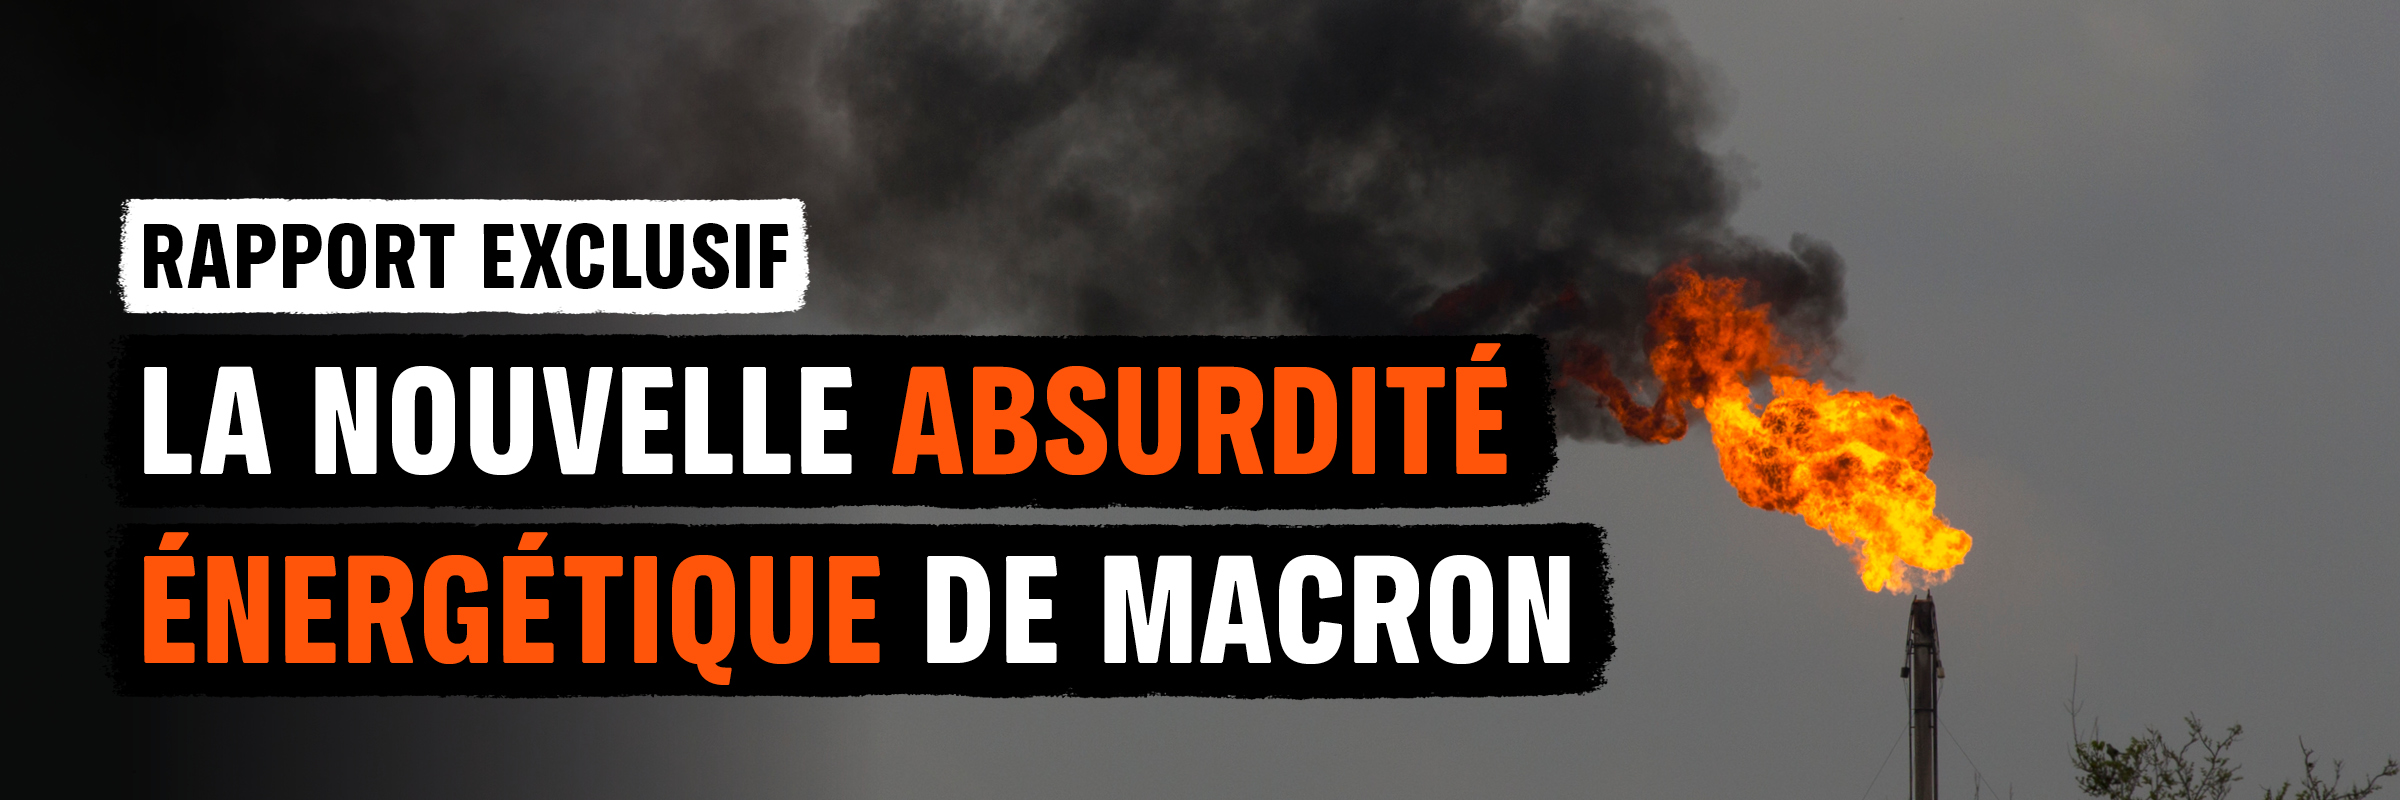 Rapport exclusif : la nouvelle absurdité énergétique d’Emmanuel Macron